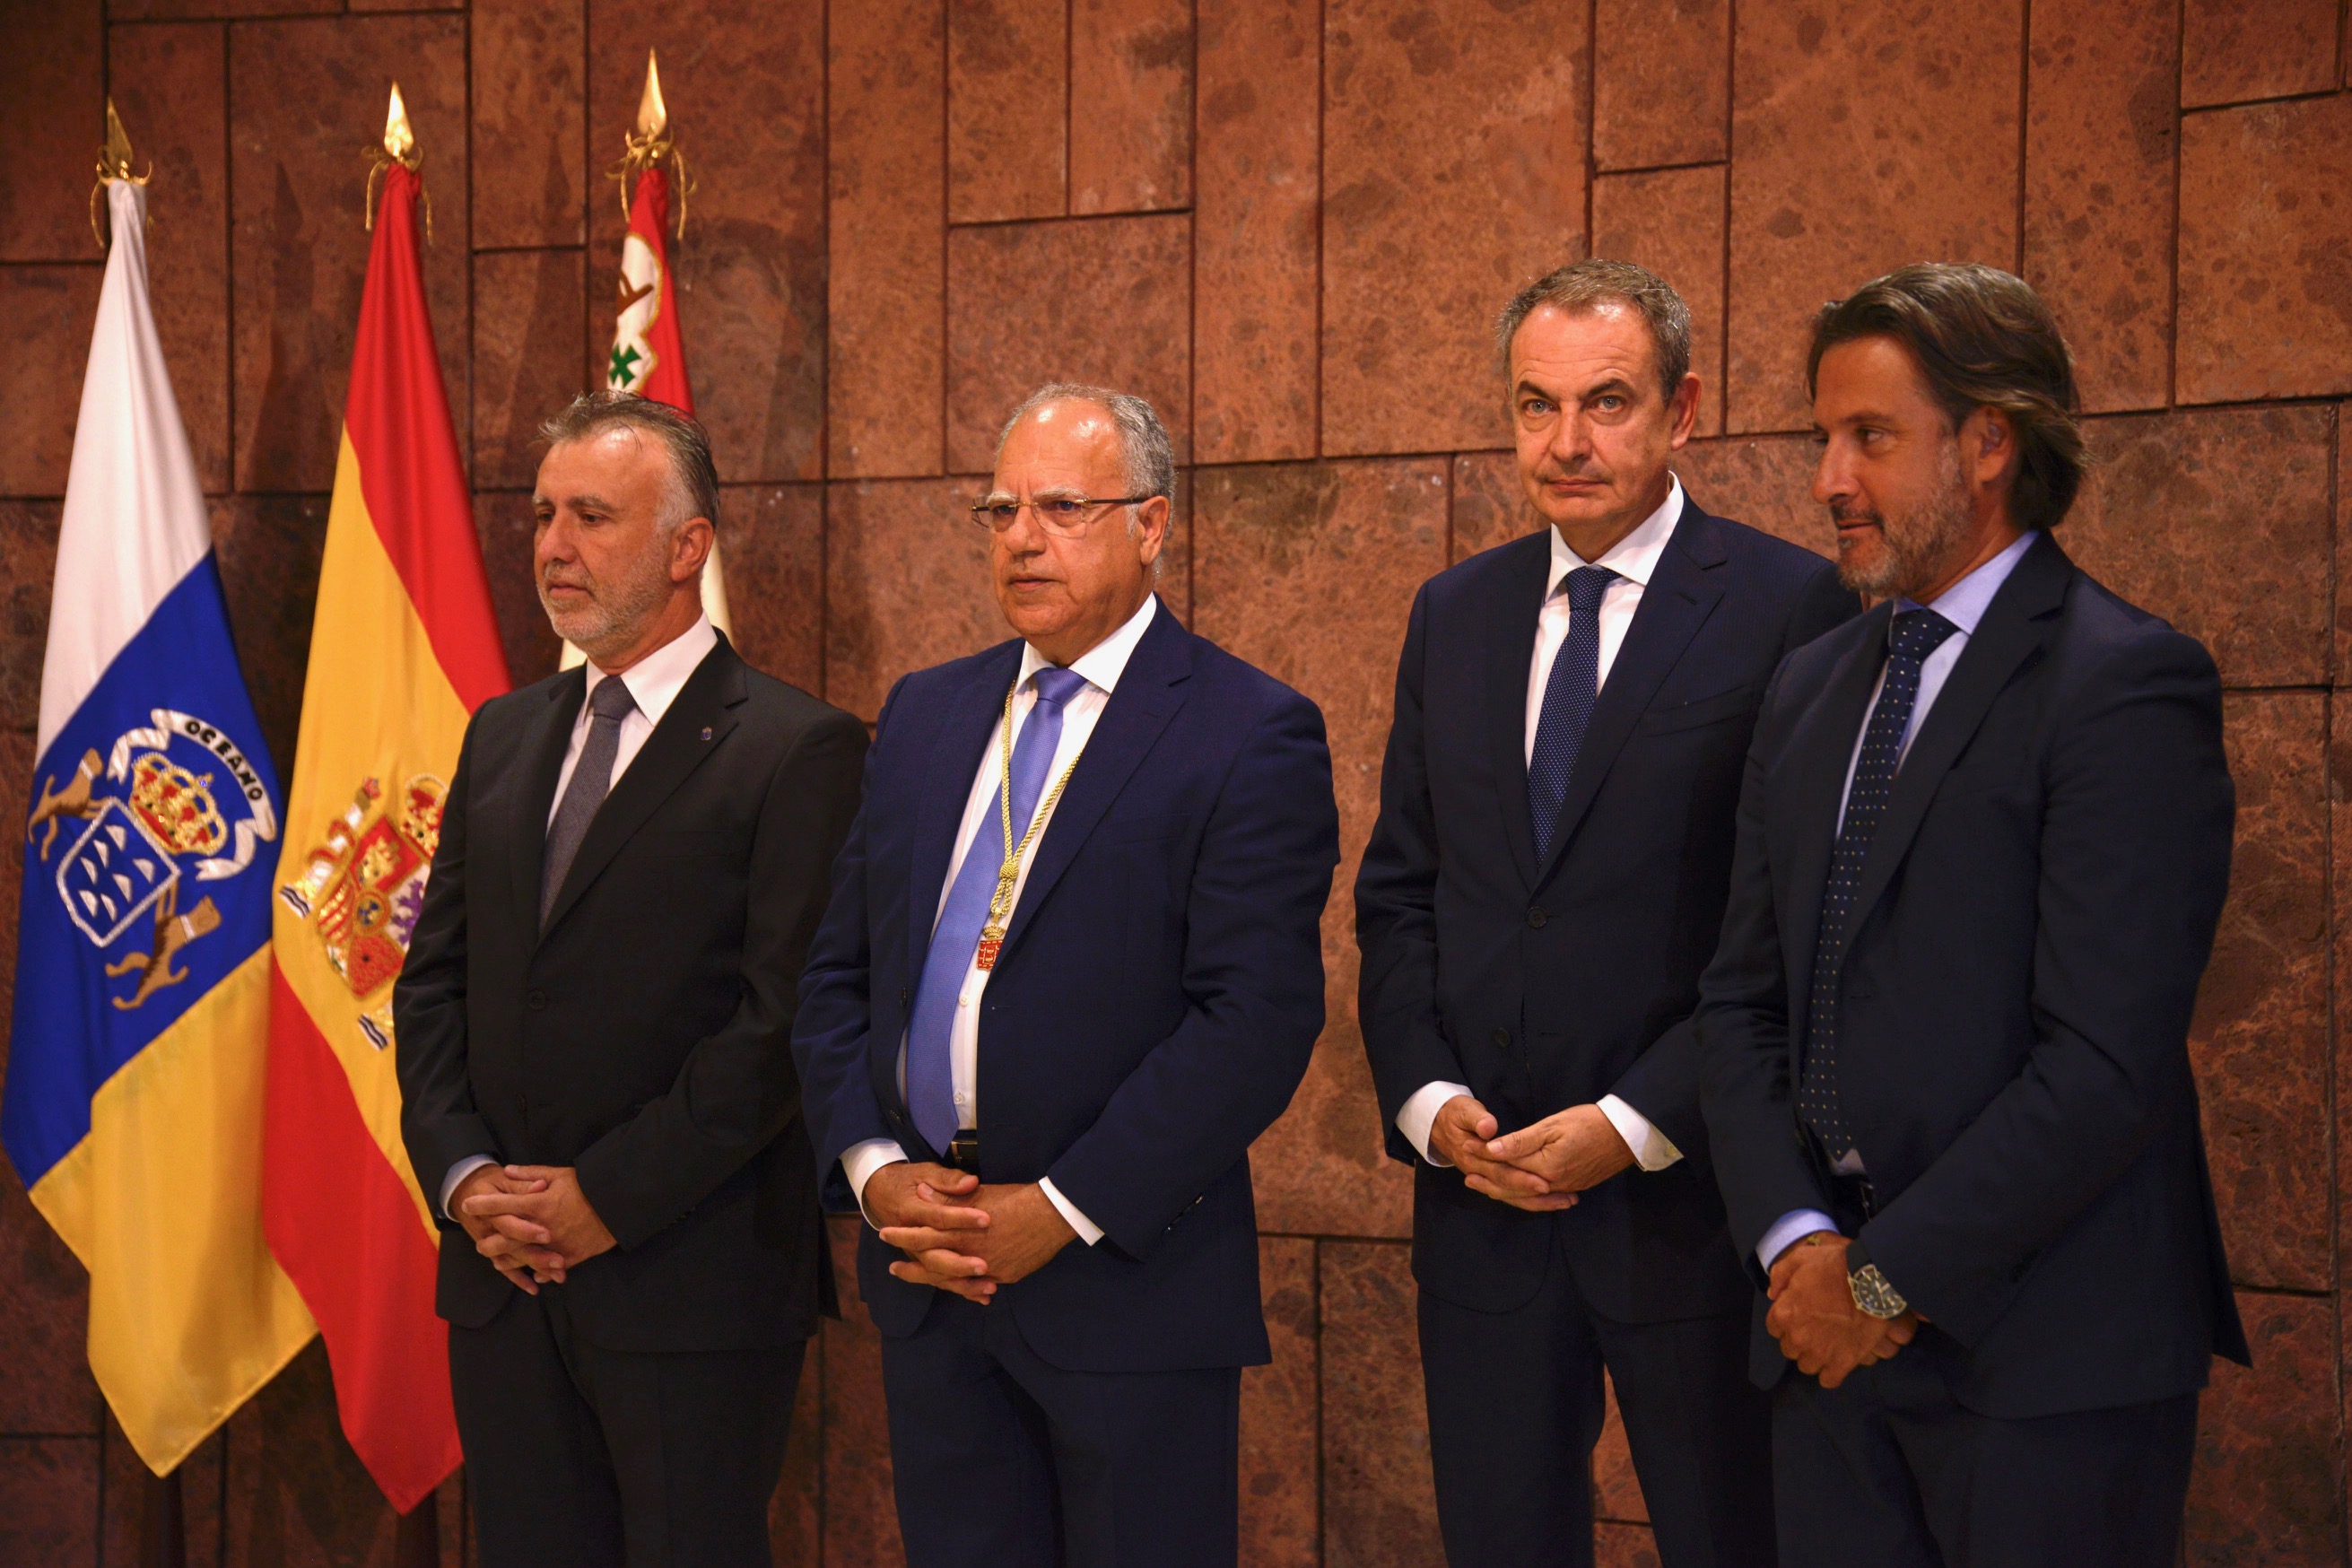 Los presidentes del Parlamento, el Gobierno canario y el Cabildo gomero, junto con el conferenciante oficial de las Jornadas, José Luis Rodríguez Zapatero